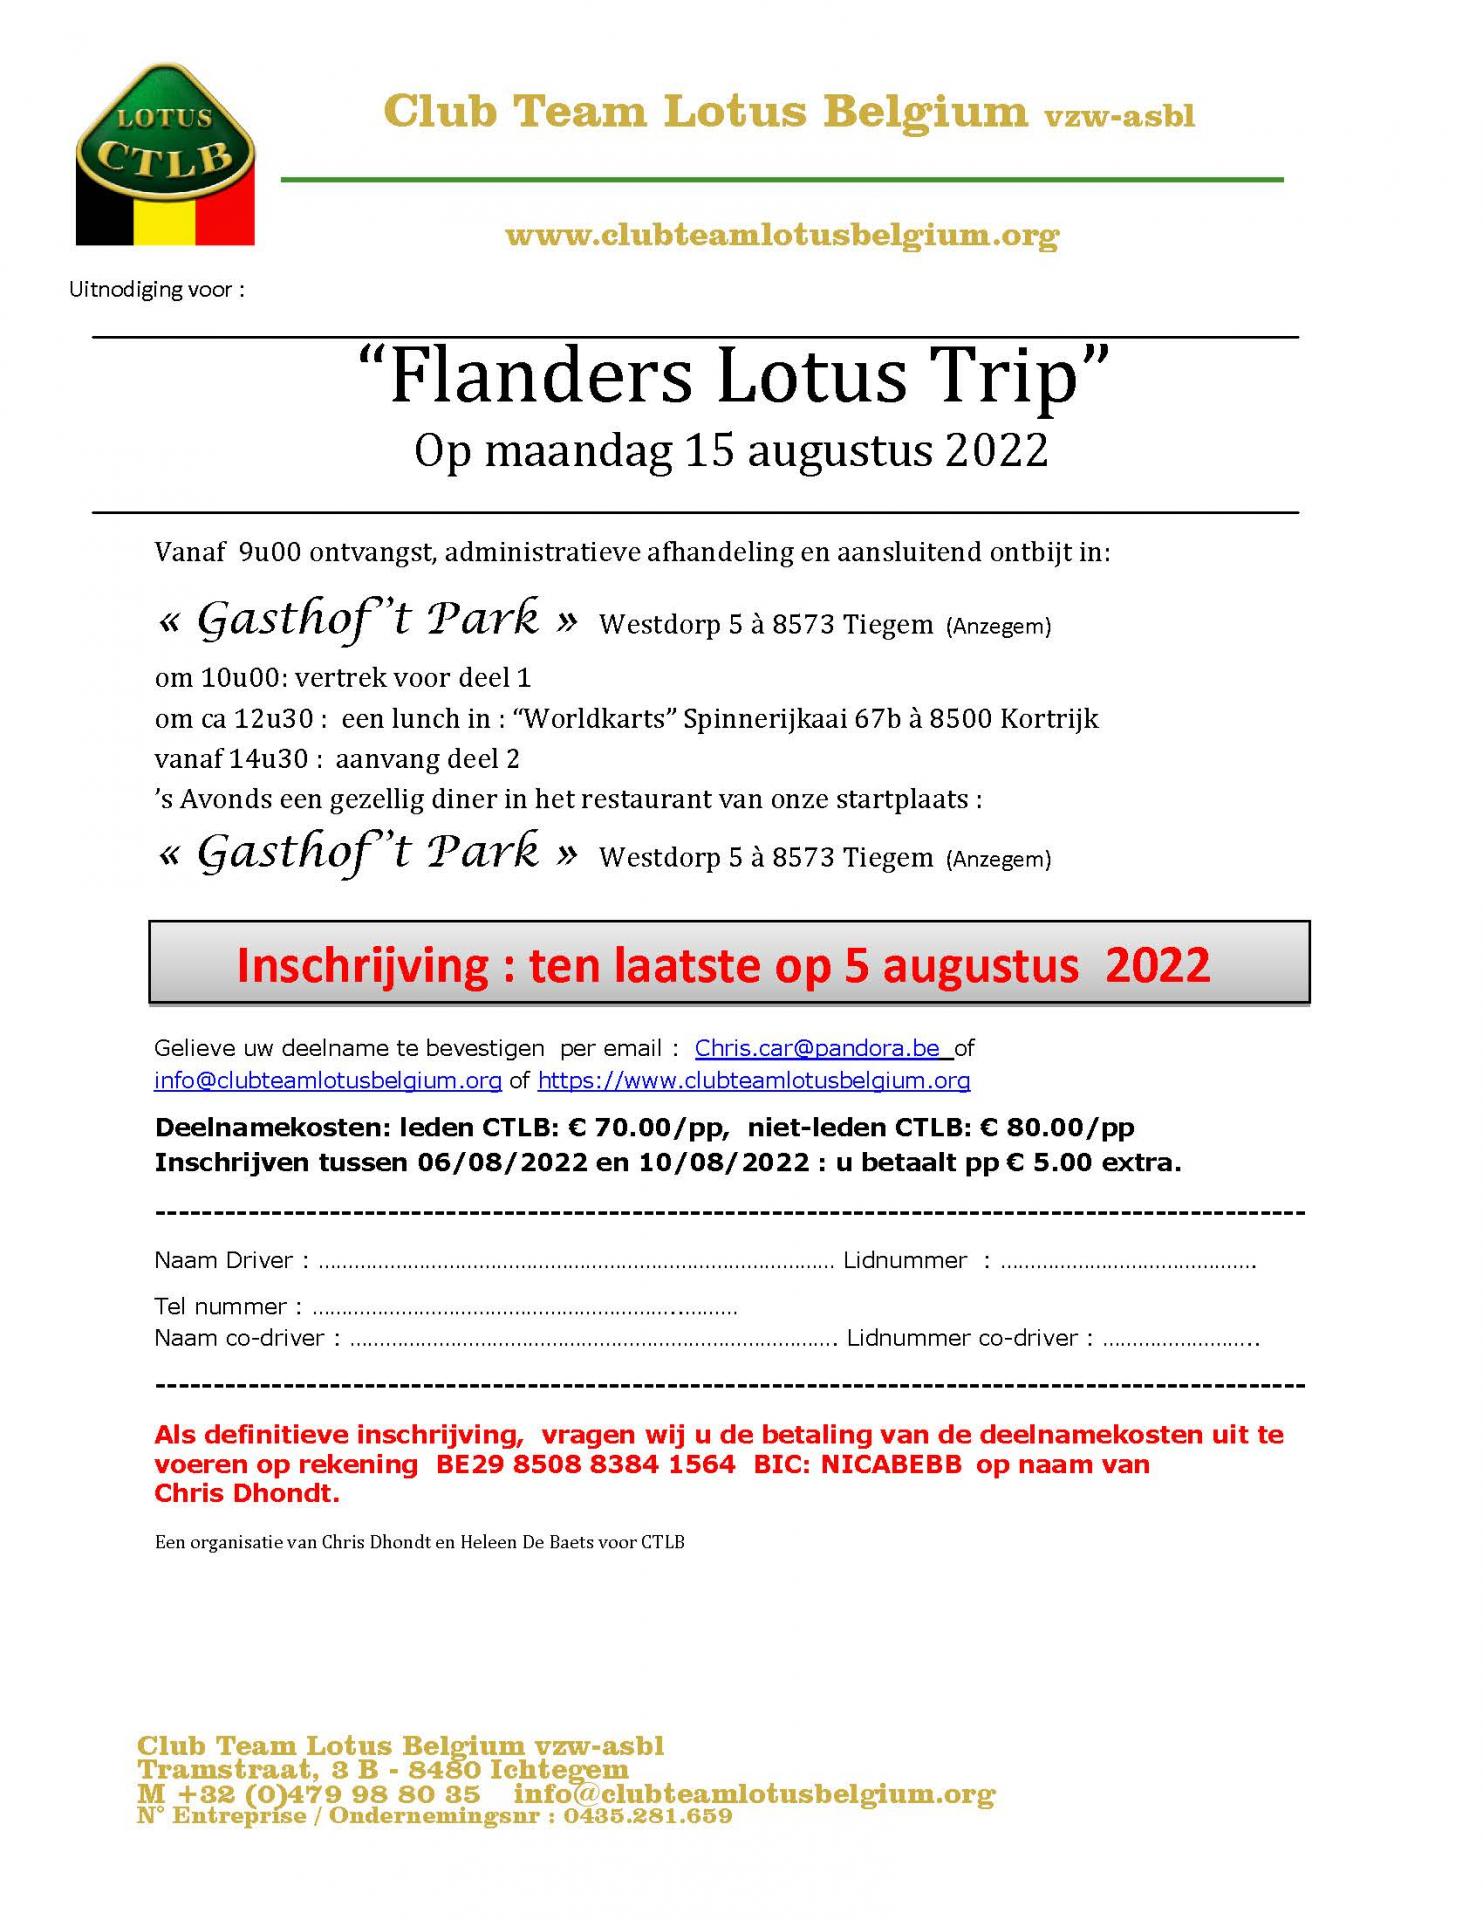 Uitnodiging flanders lotus trip 2022